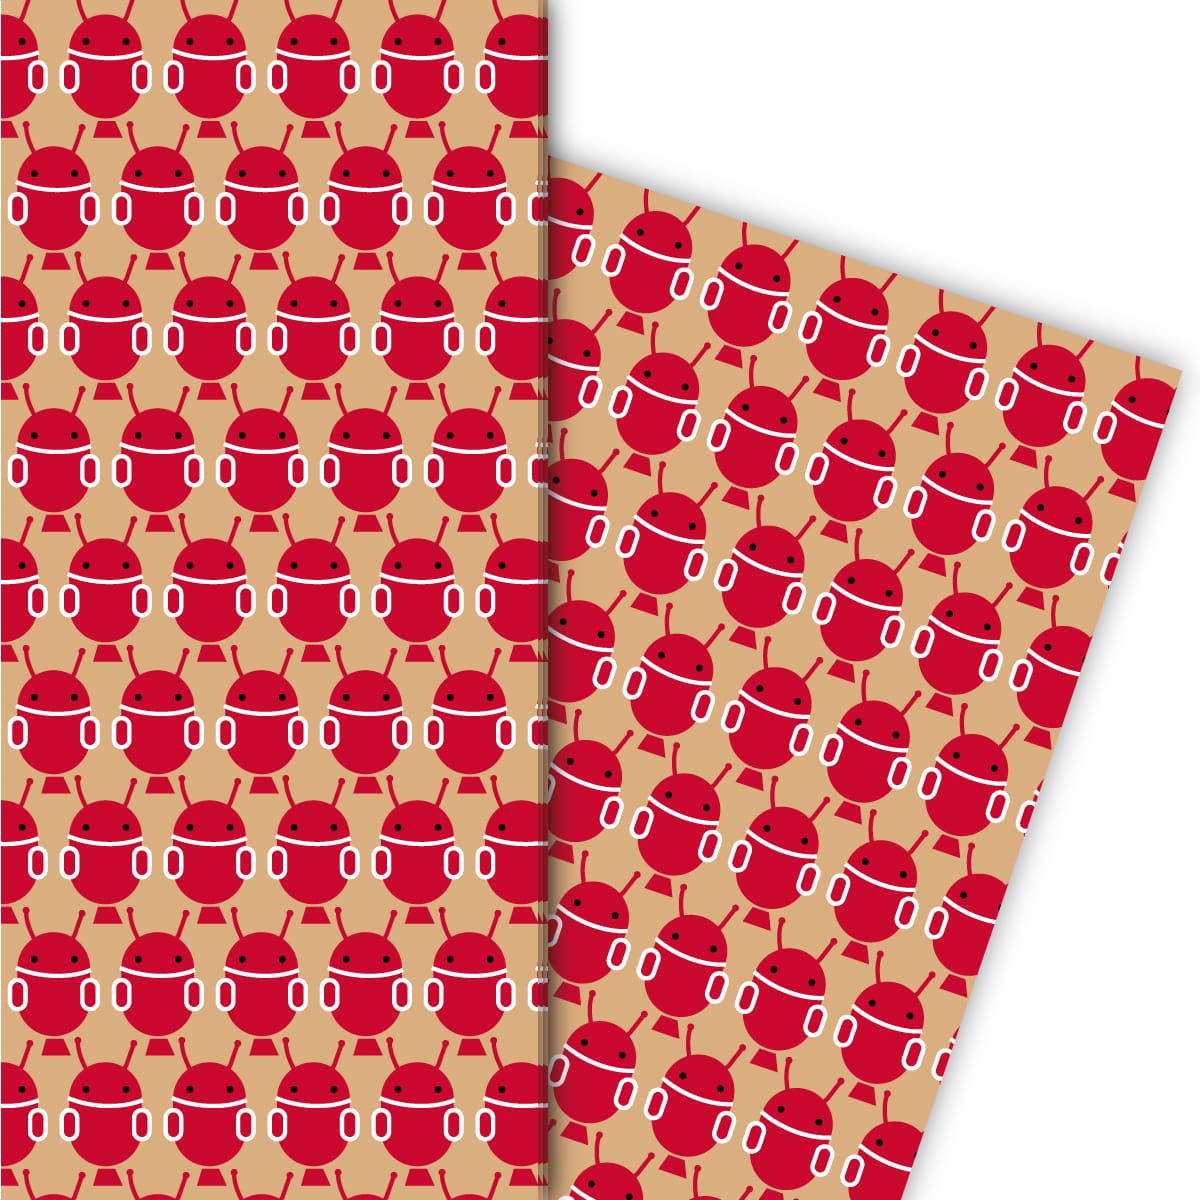 Kartenkaufrausch: Cooles Geschenkpapier mit Marsmännchen aus unserer Kinder Papeterie in beige